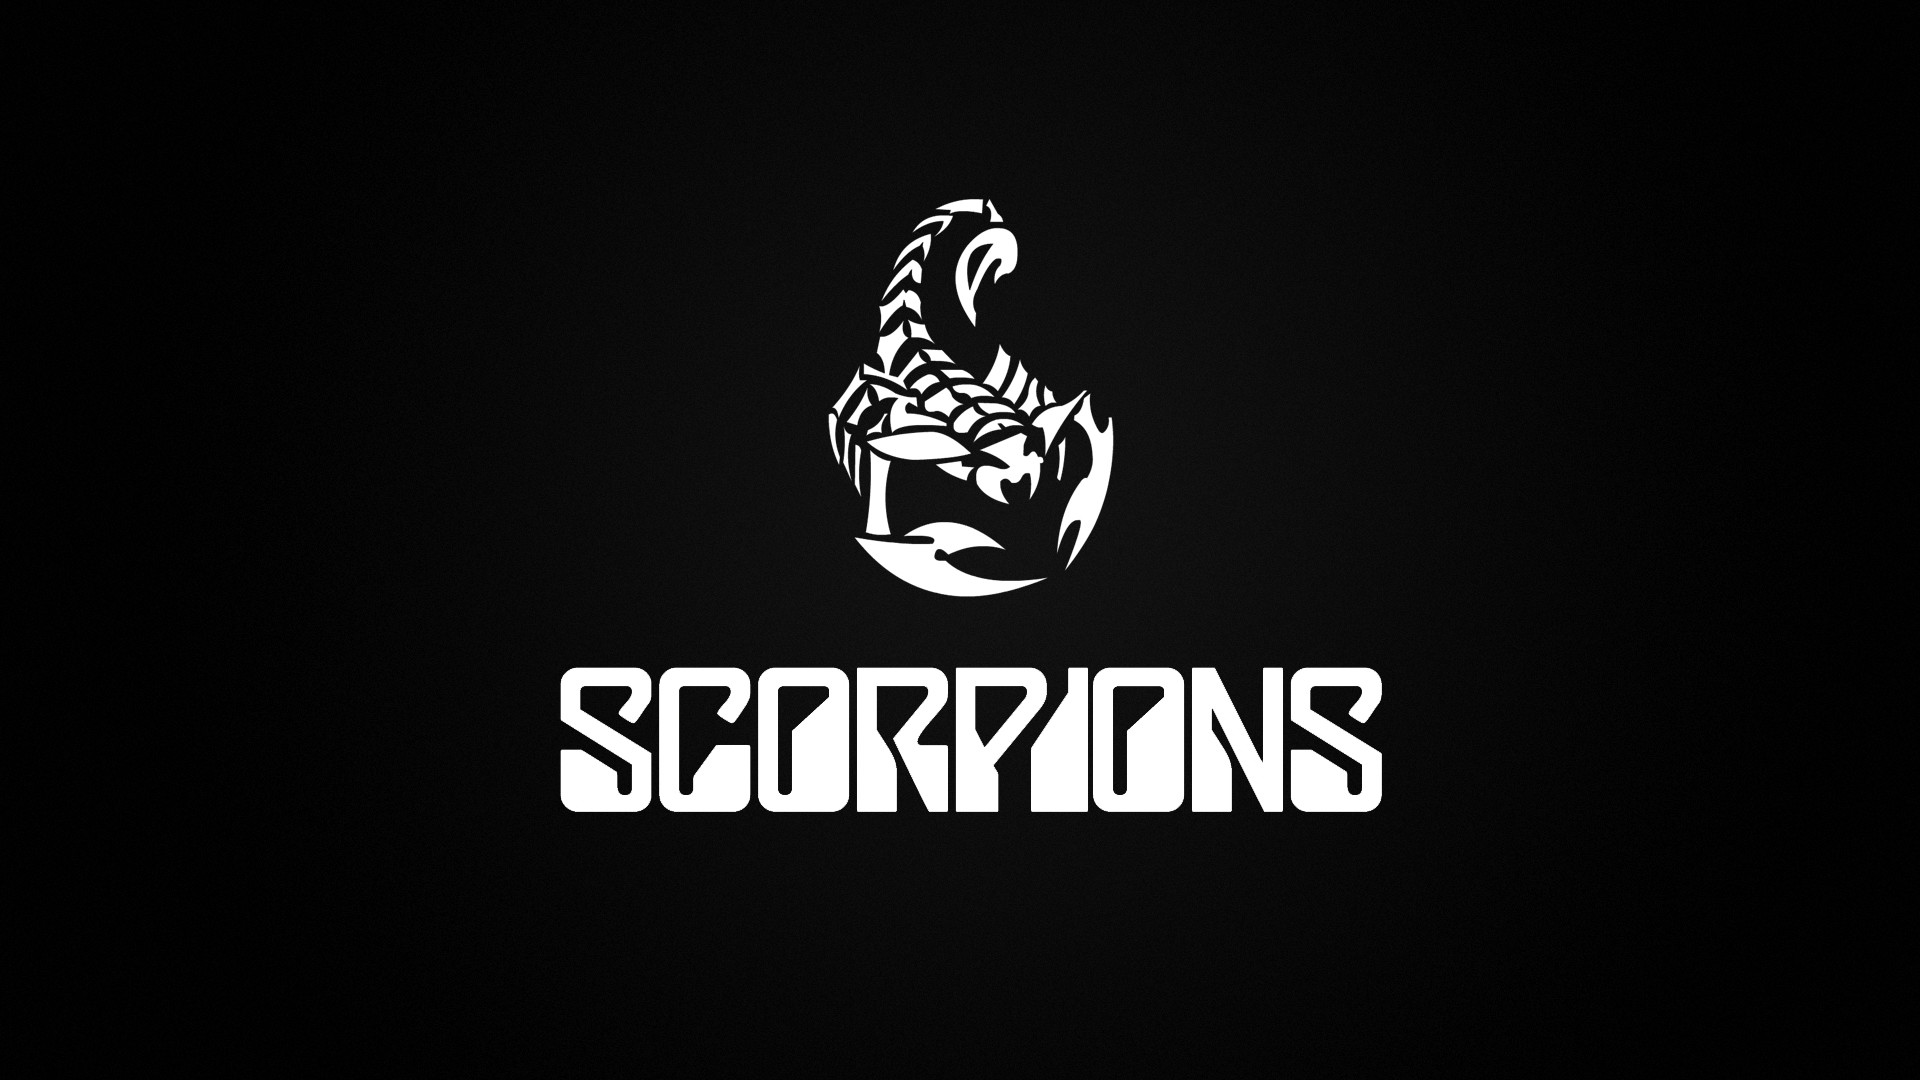 1920x1080 Scorpion-HD-Image